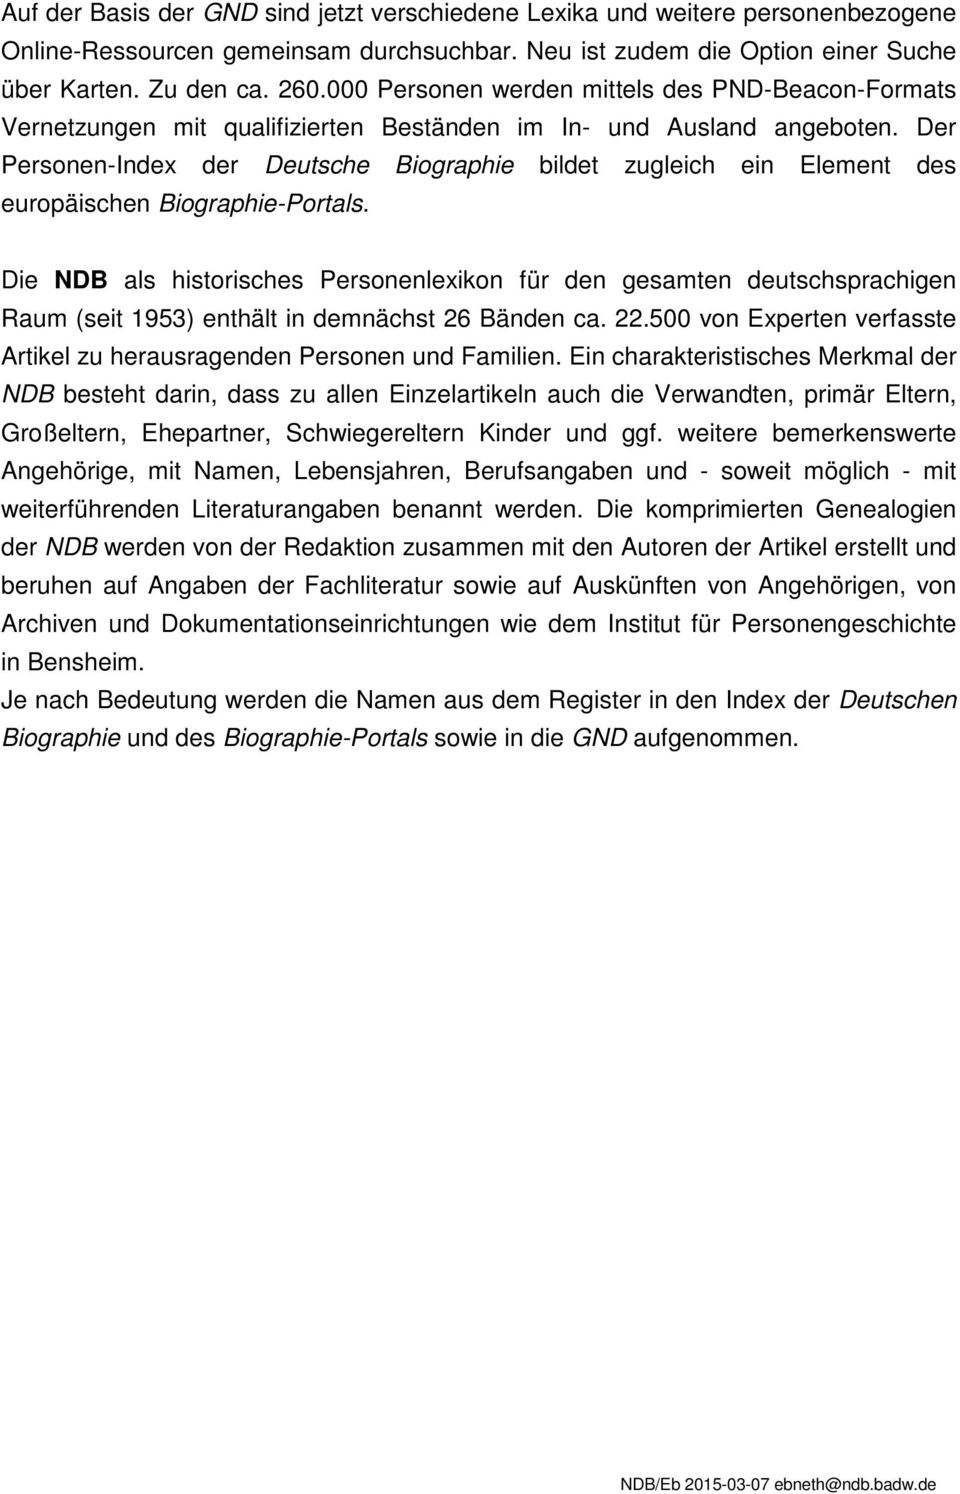 Der Personen-Index der Deutsche Biographie bildet zugleich ein Element des europäischen Biographie-Portals.